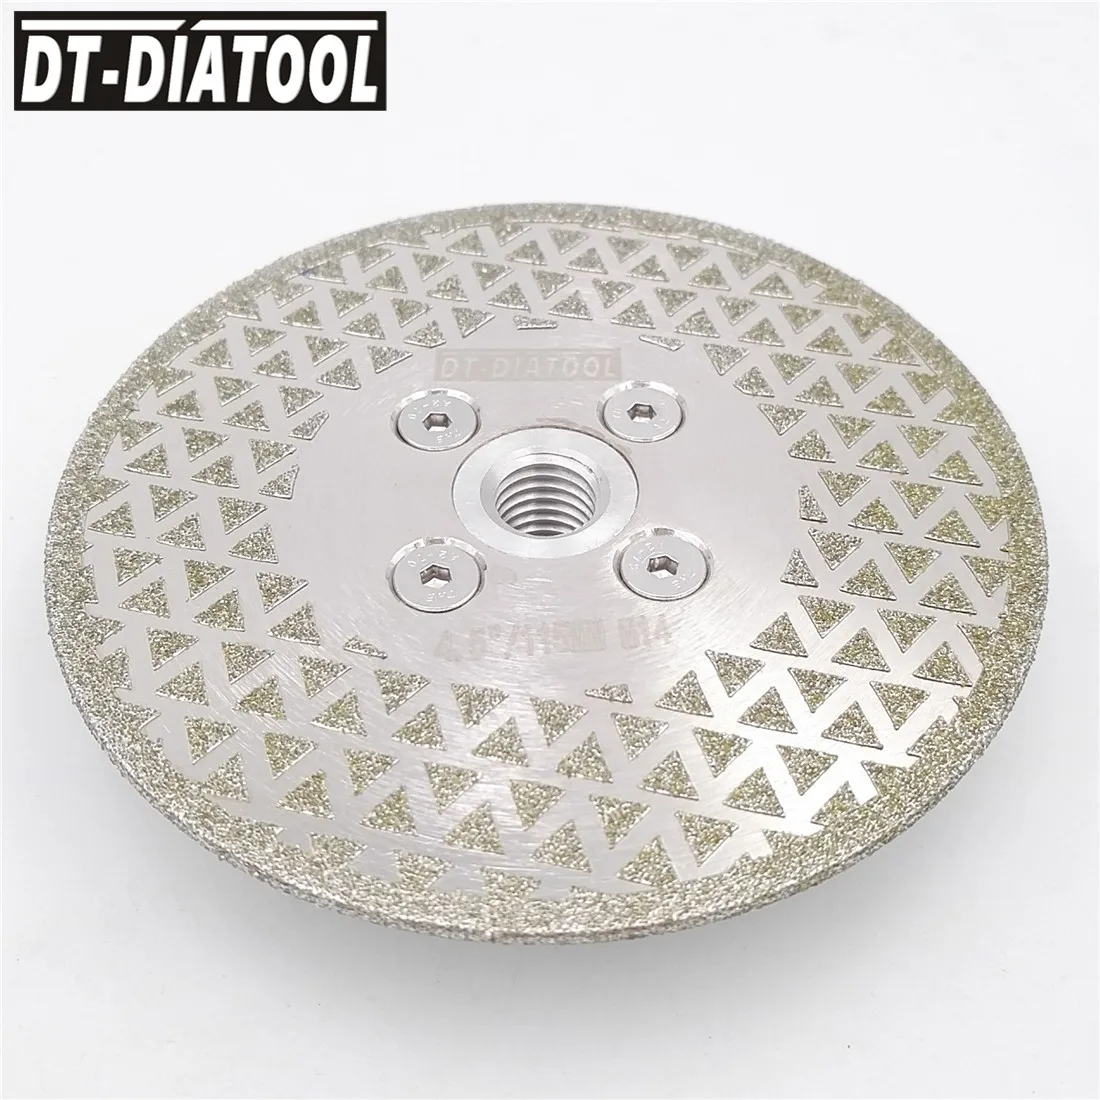 DT-DIATOOL 1 шт. одиночное Боковое покрытие алмазный отрезной диск с электролитическим покрытием шлифовальный диск M14 или 5/8-11 резьба Гранит Мрамор Круглопильный Станок для плитки